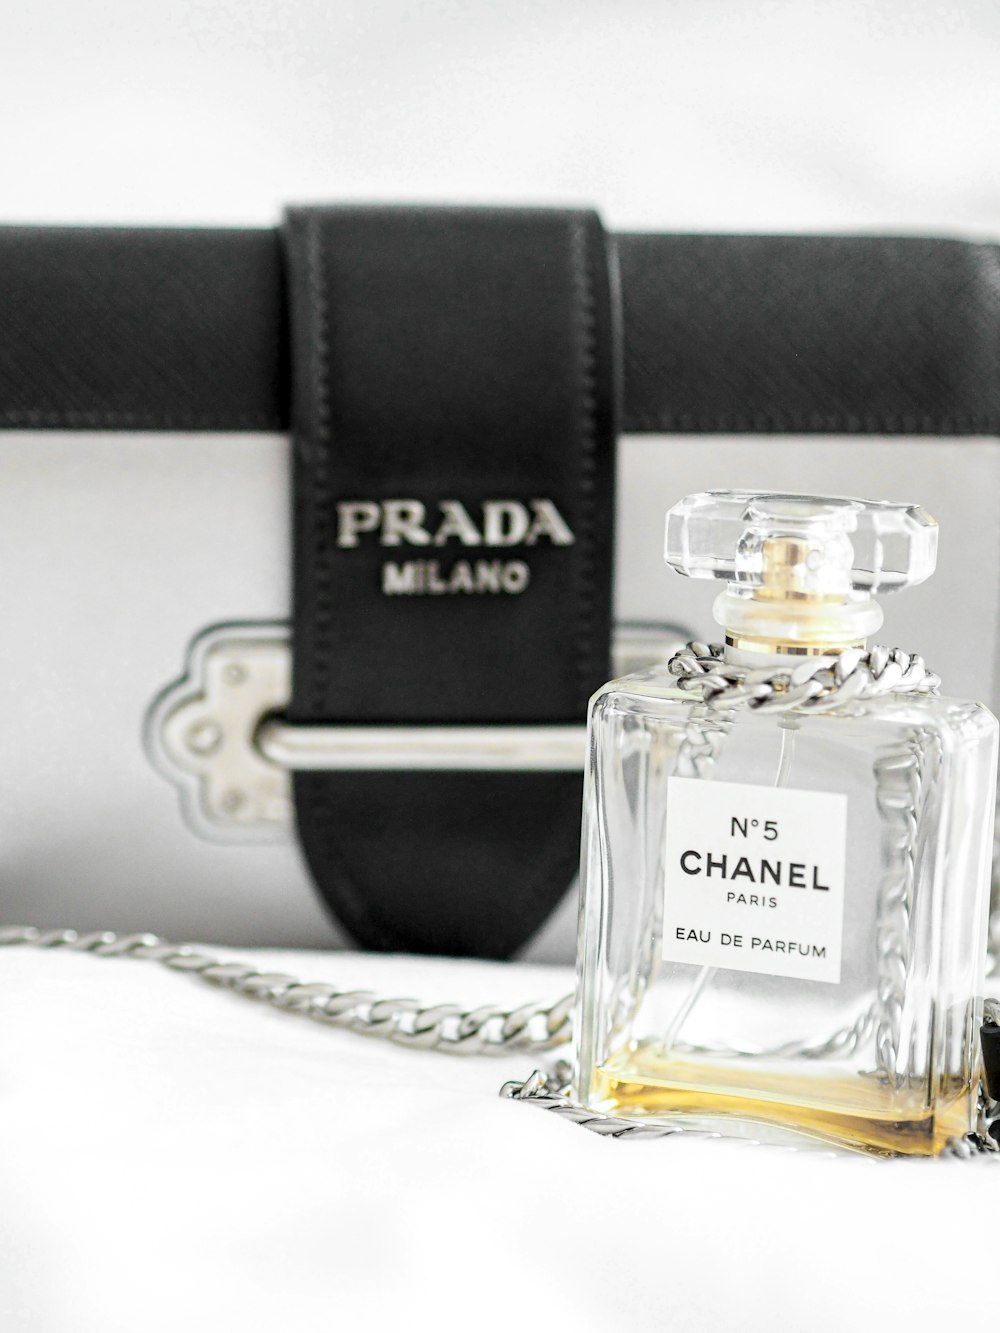 black and gold perfume bottle photo – Free Paris Image on Unsplash